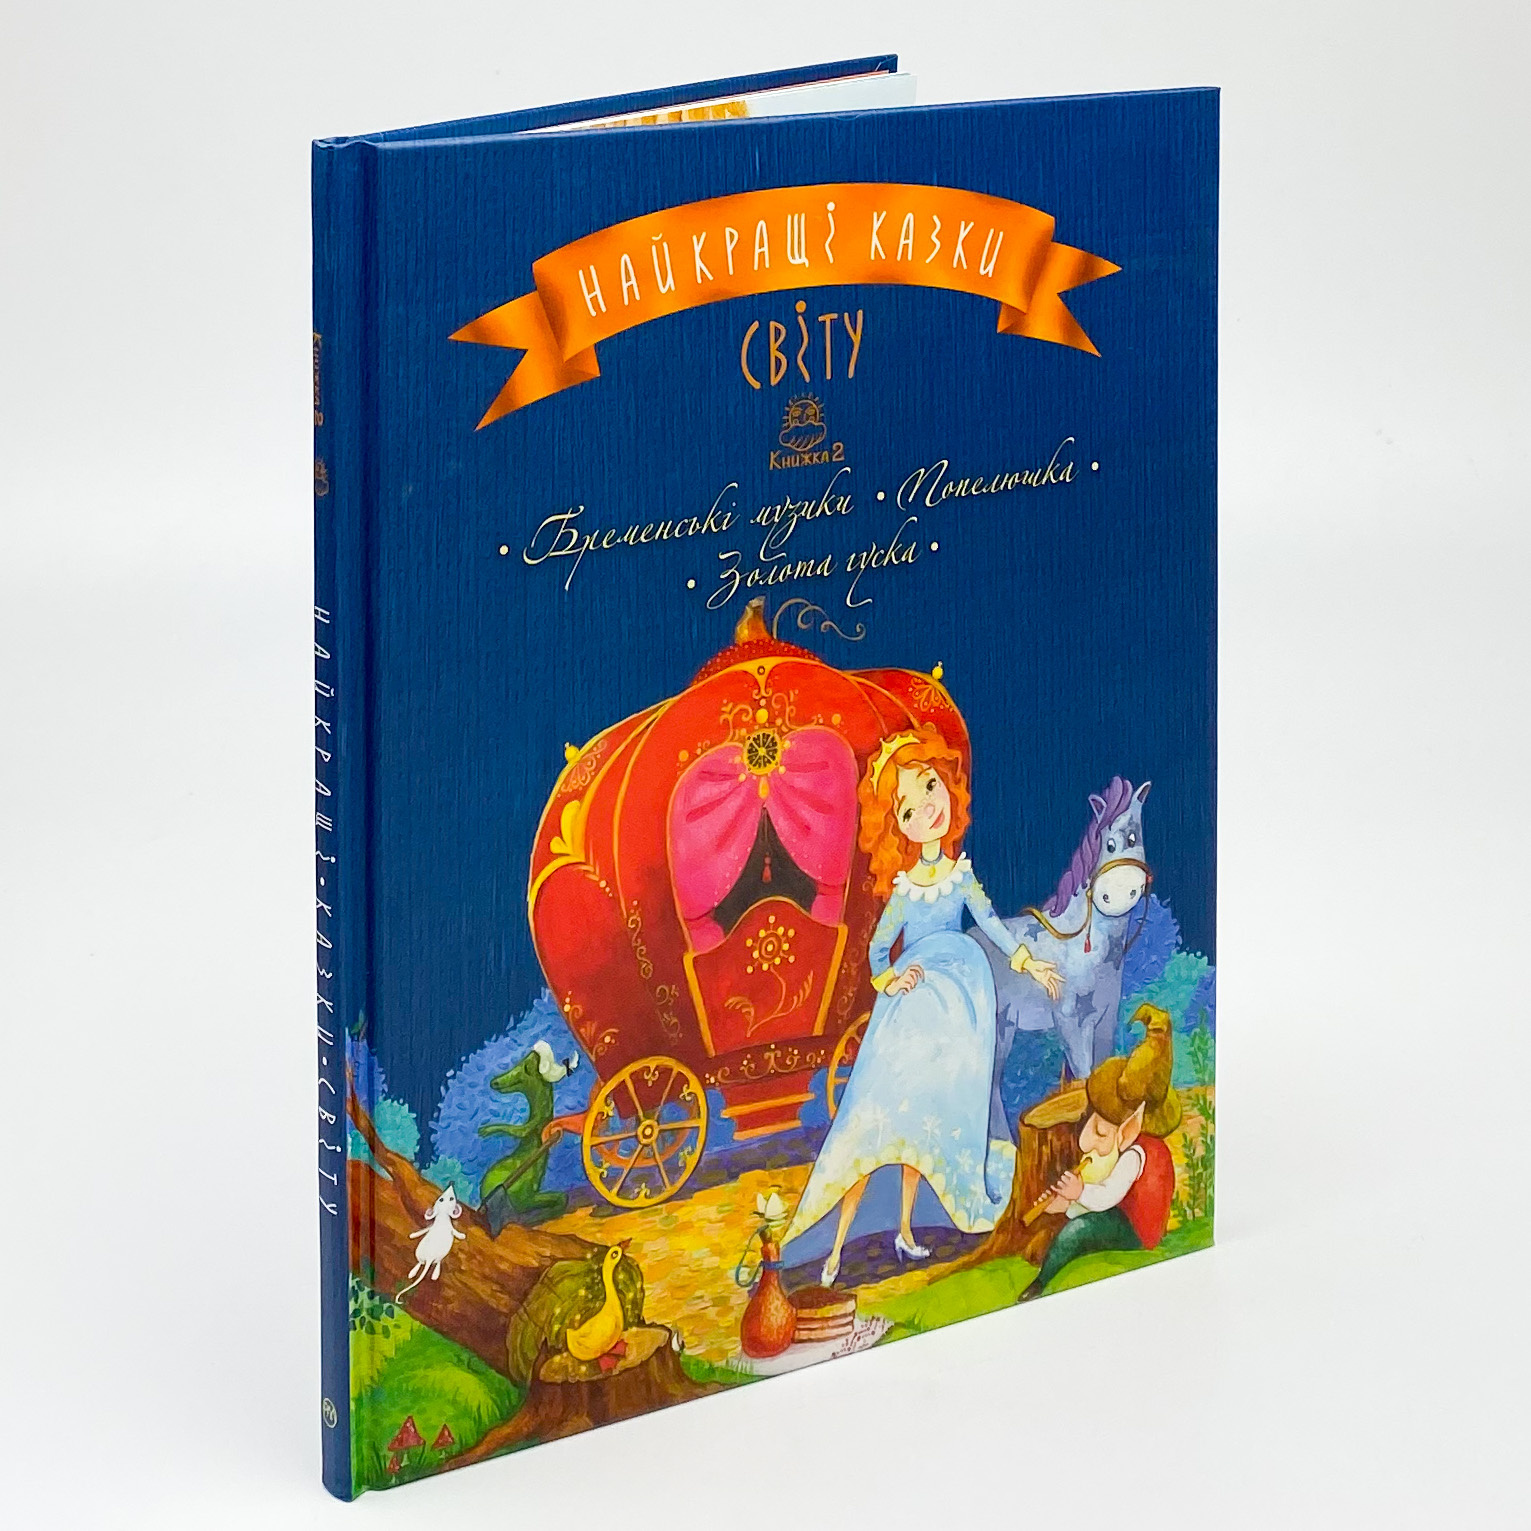 Найкращі казки світу : кн. 2 : Бременські музики. Попелюшка. Золота гуска. Автор — Лариса Цілик. 